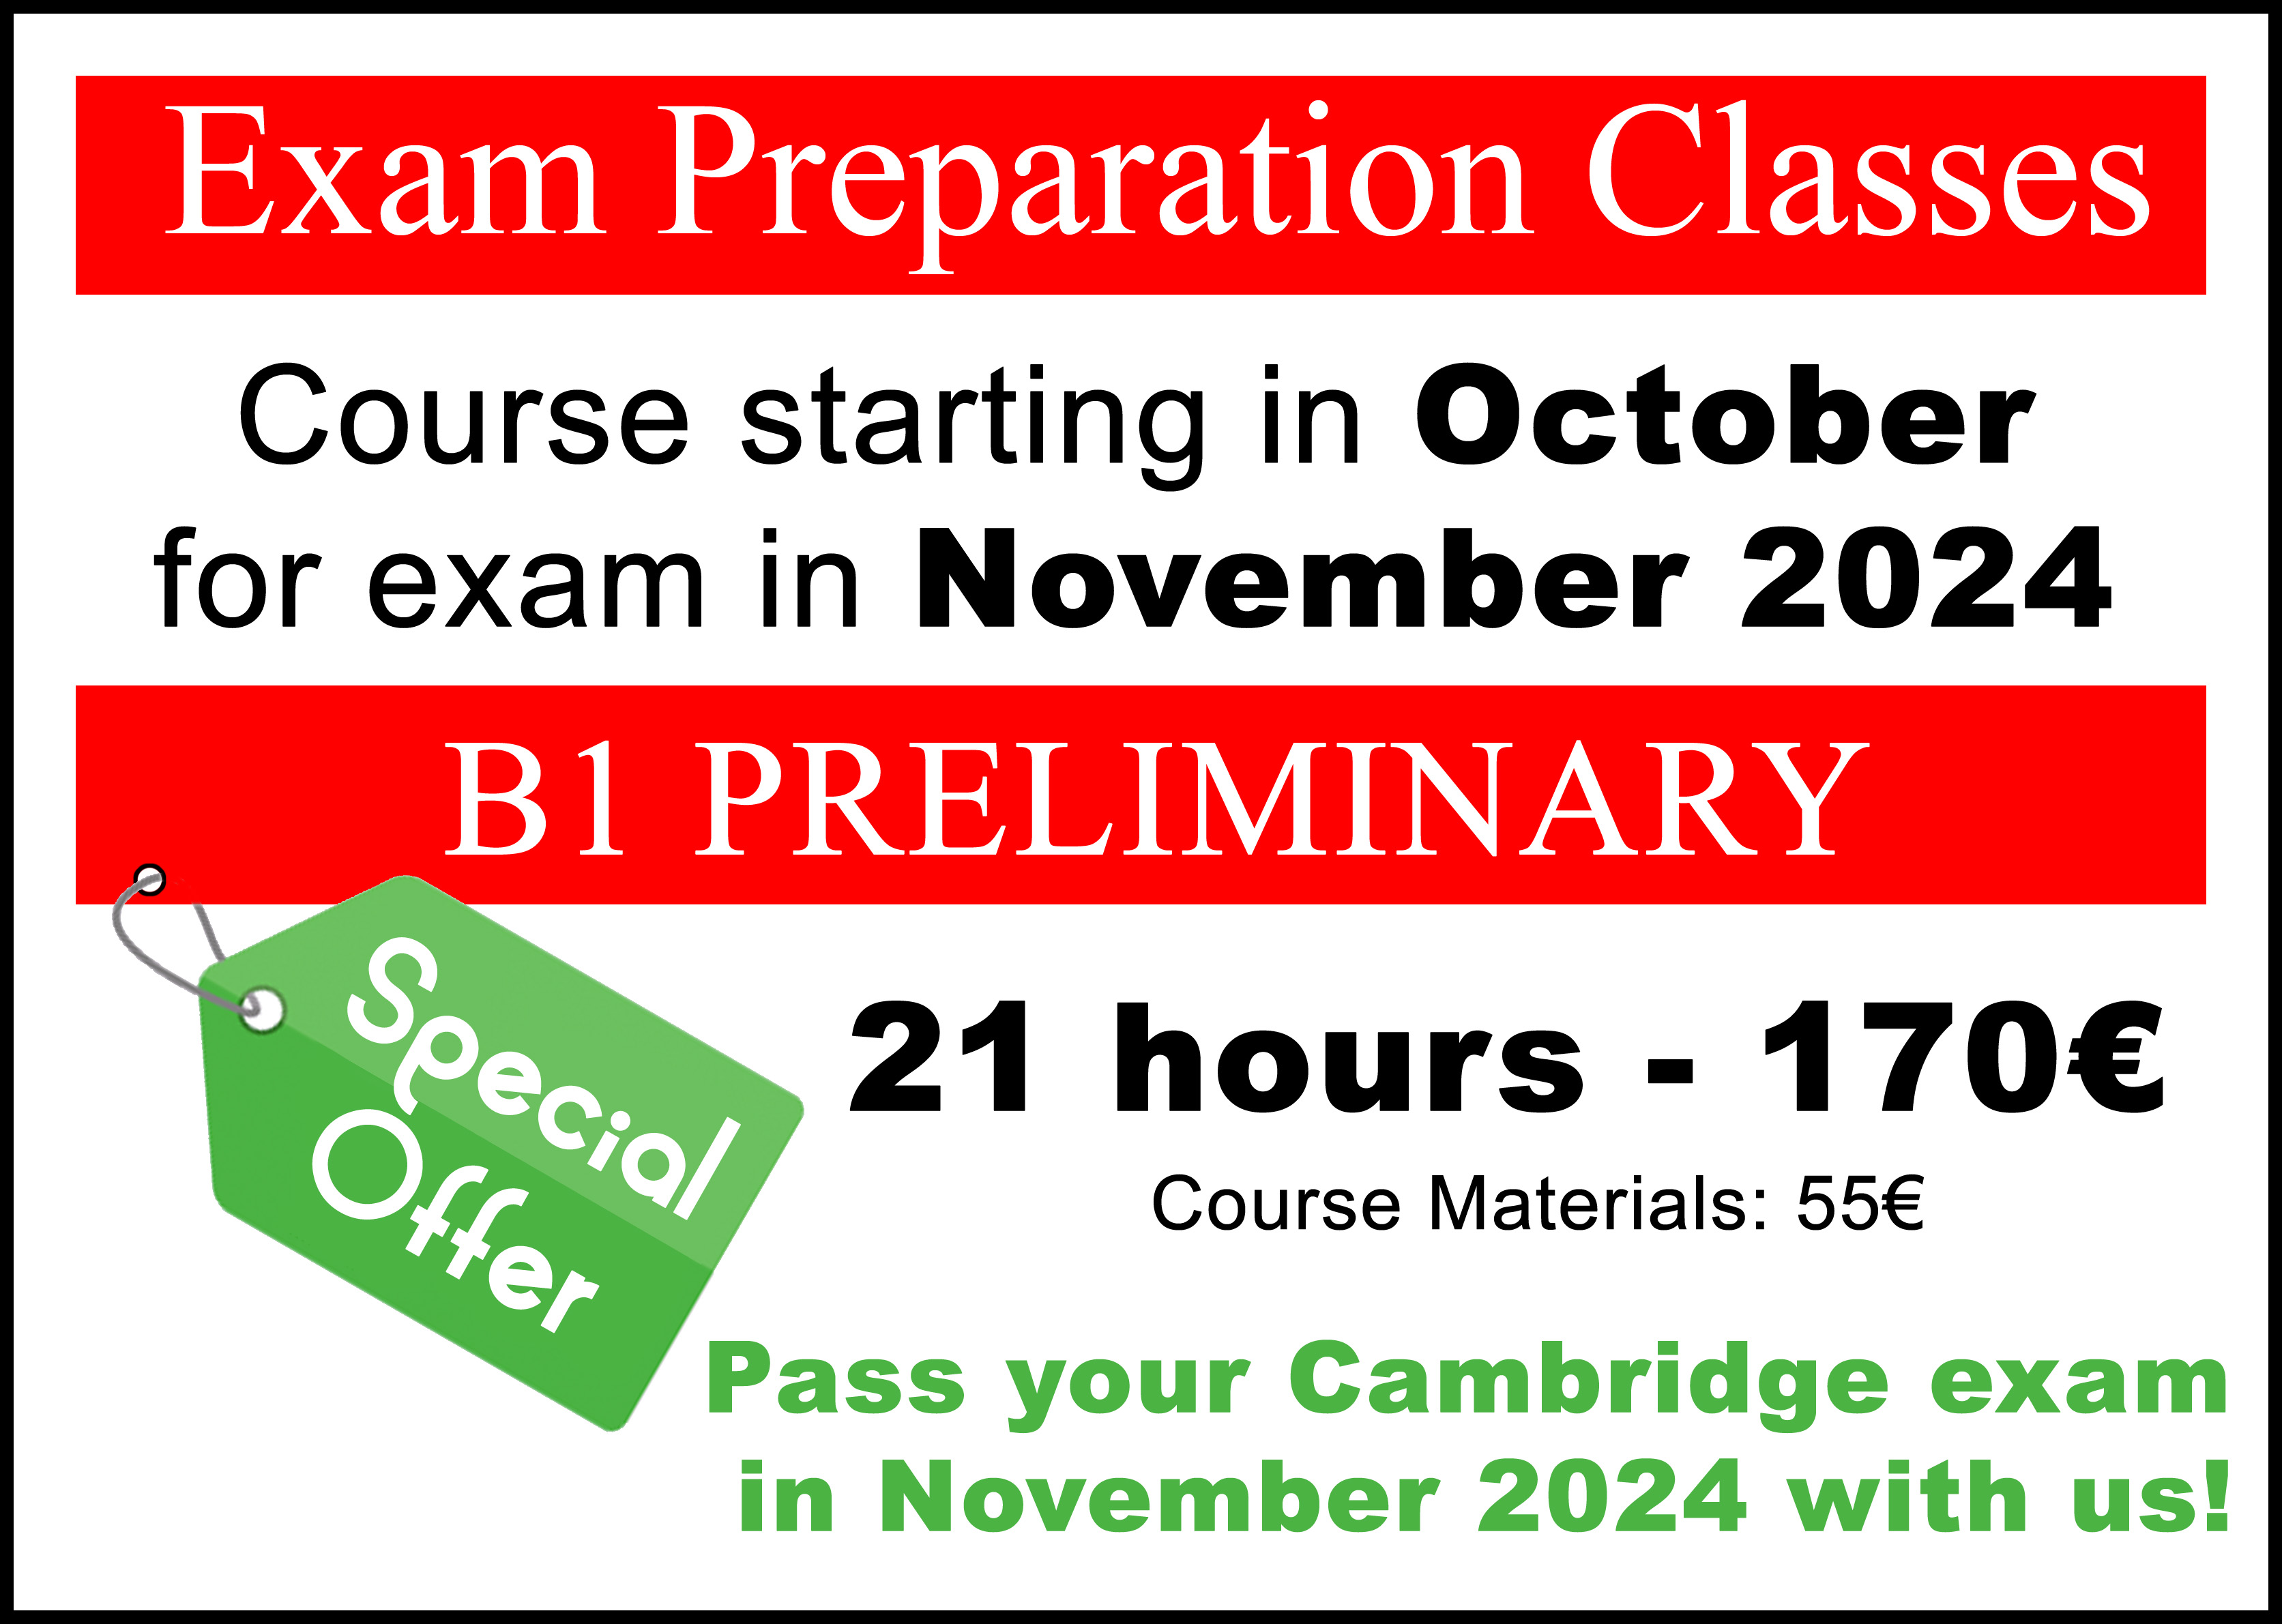 cursos de preparación para exámen B1 Preliminary